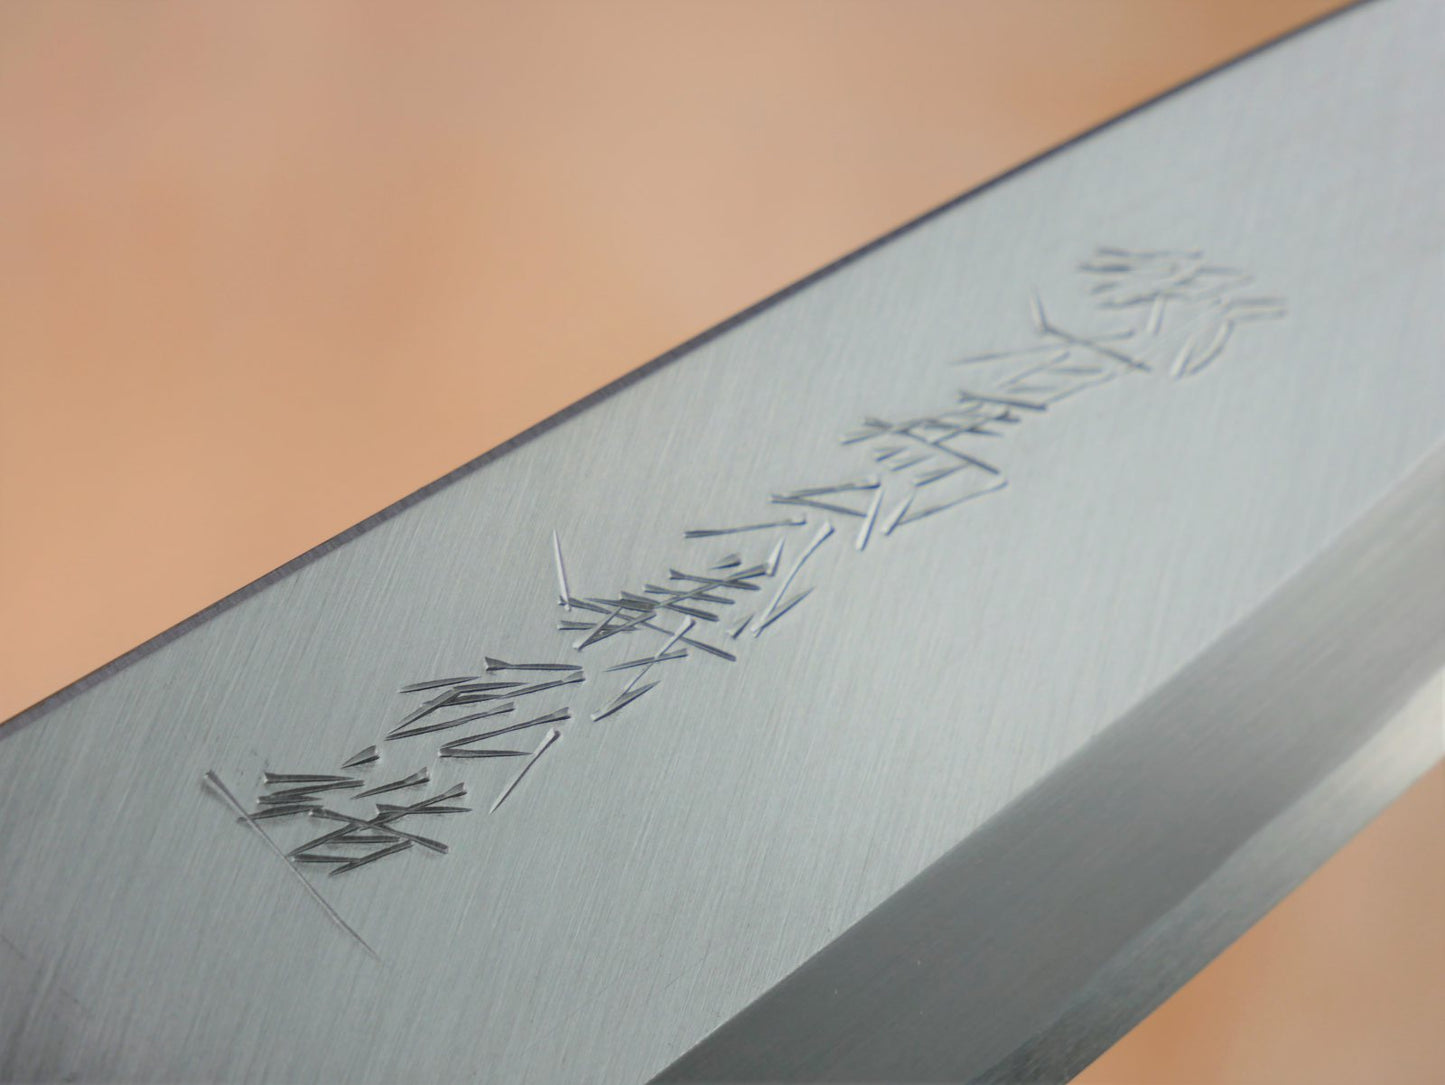 Maker's mark on blade face of 180mm Shirogami Deba made by Yamawaki Hamono